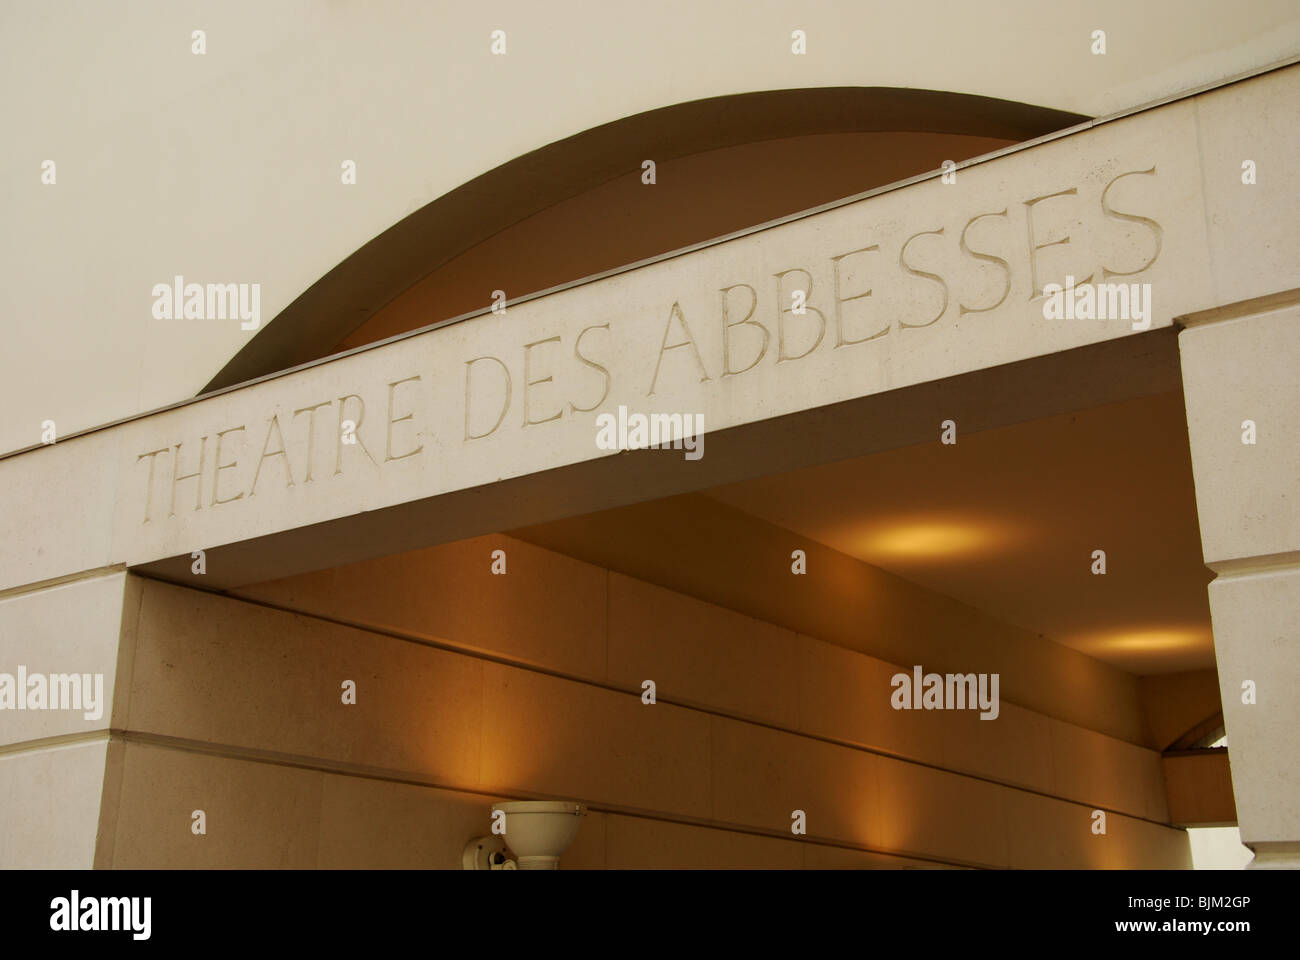 Theatre des Abbesses, Montmartre Paris France Stock Photo